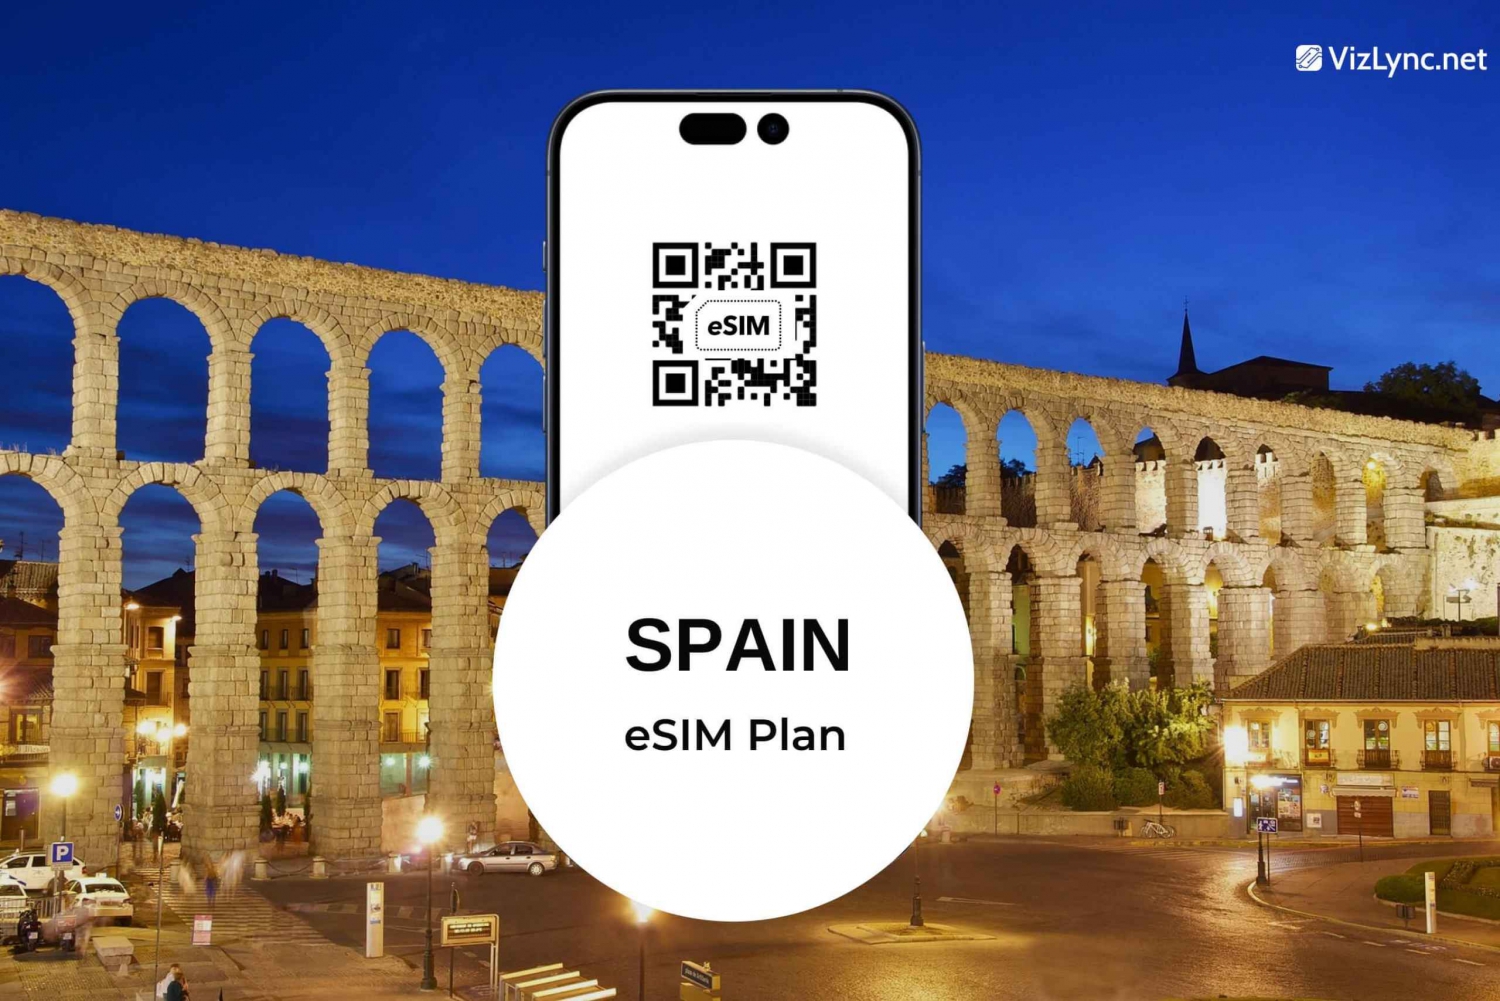 Plano eSIM para viagens na Espanha com dados móveis super rápidos